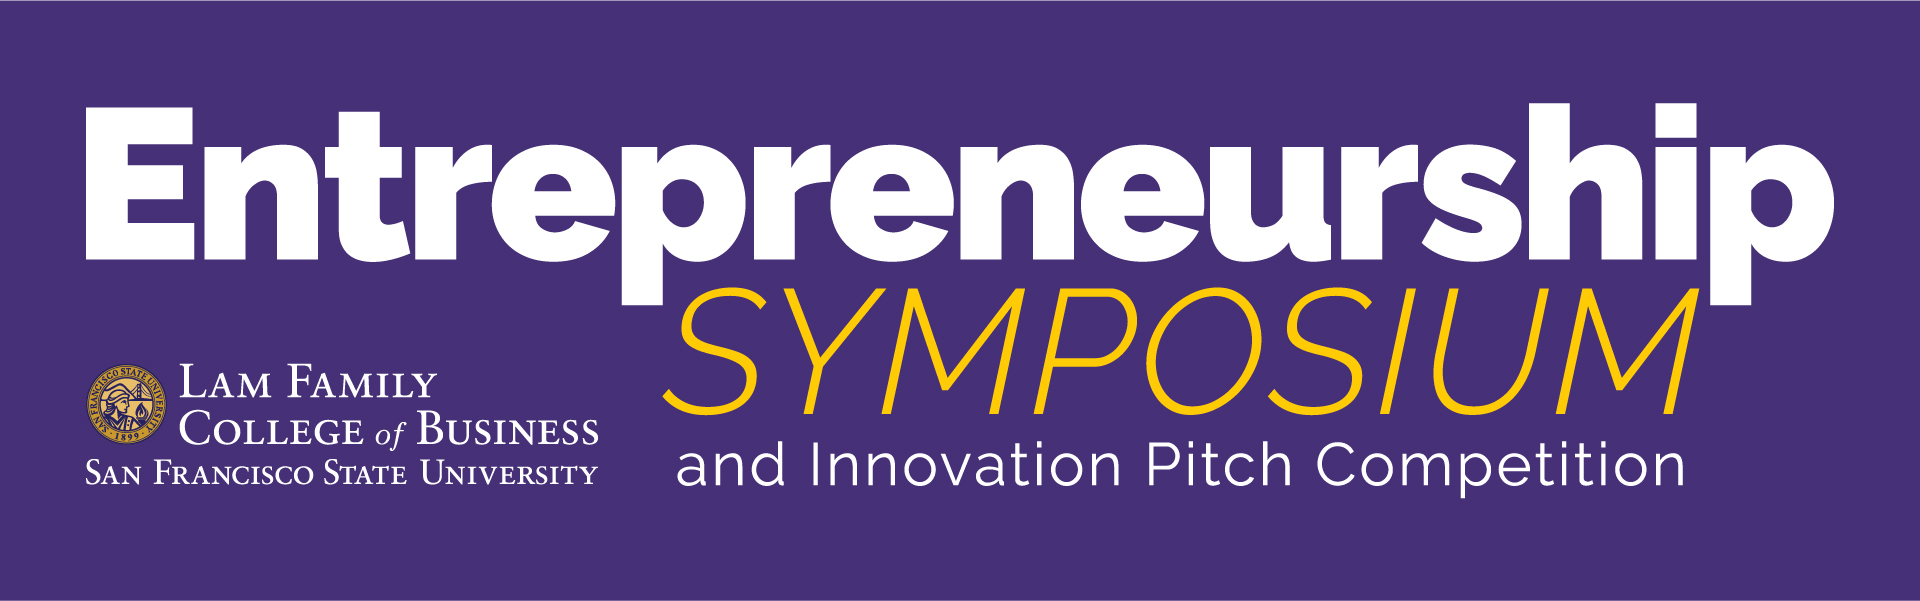 Entrepreneurship Symposium